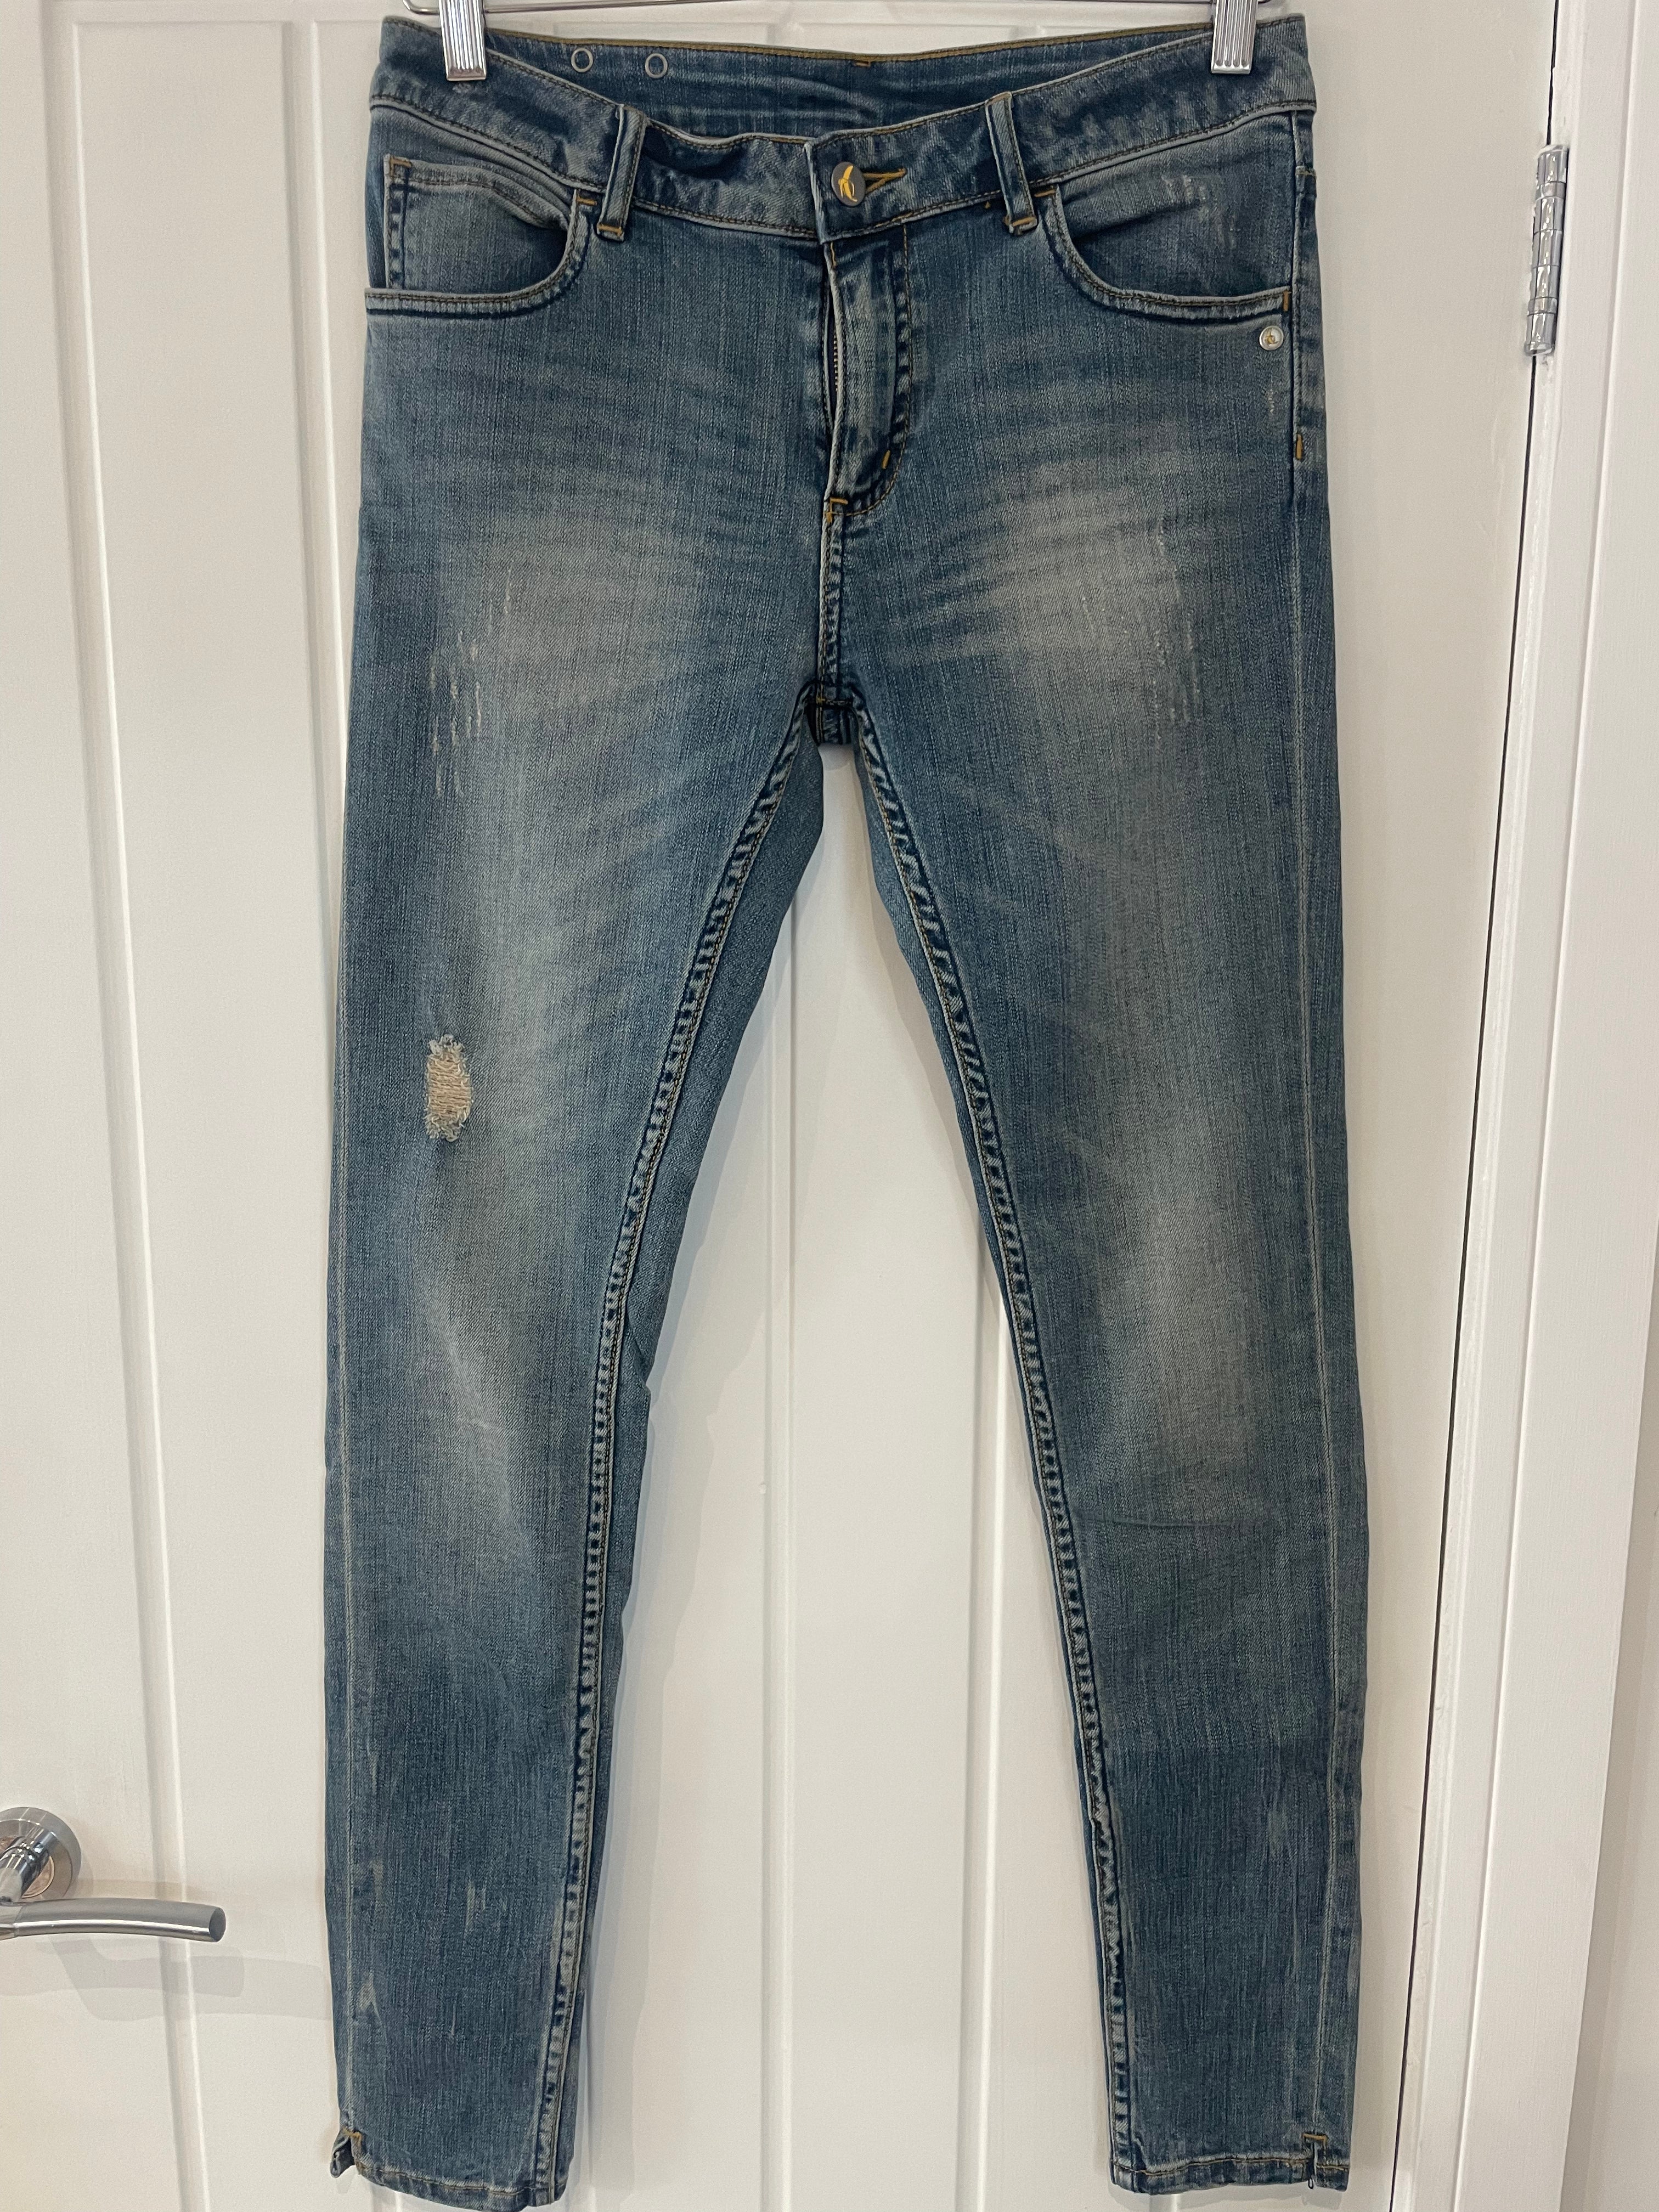 Monkee Genes vintage slim fit jeans – Apparel Leeds